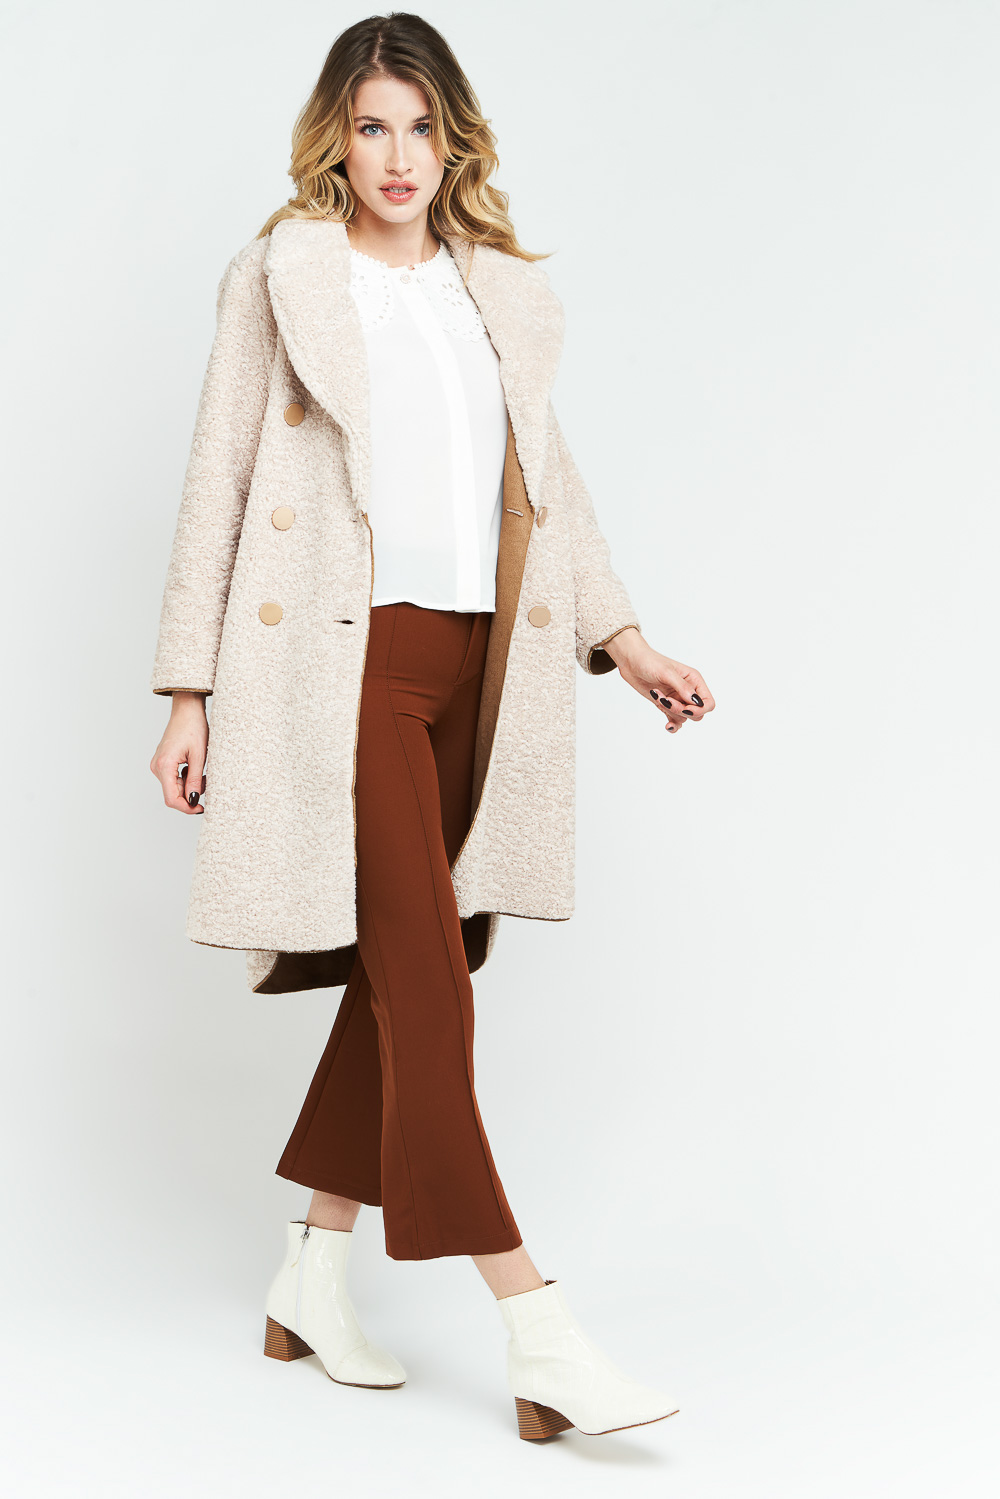 Femme en manteau long pantalon marron sur fond gris